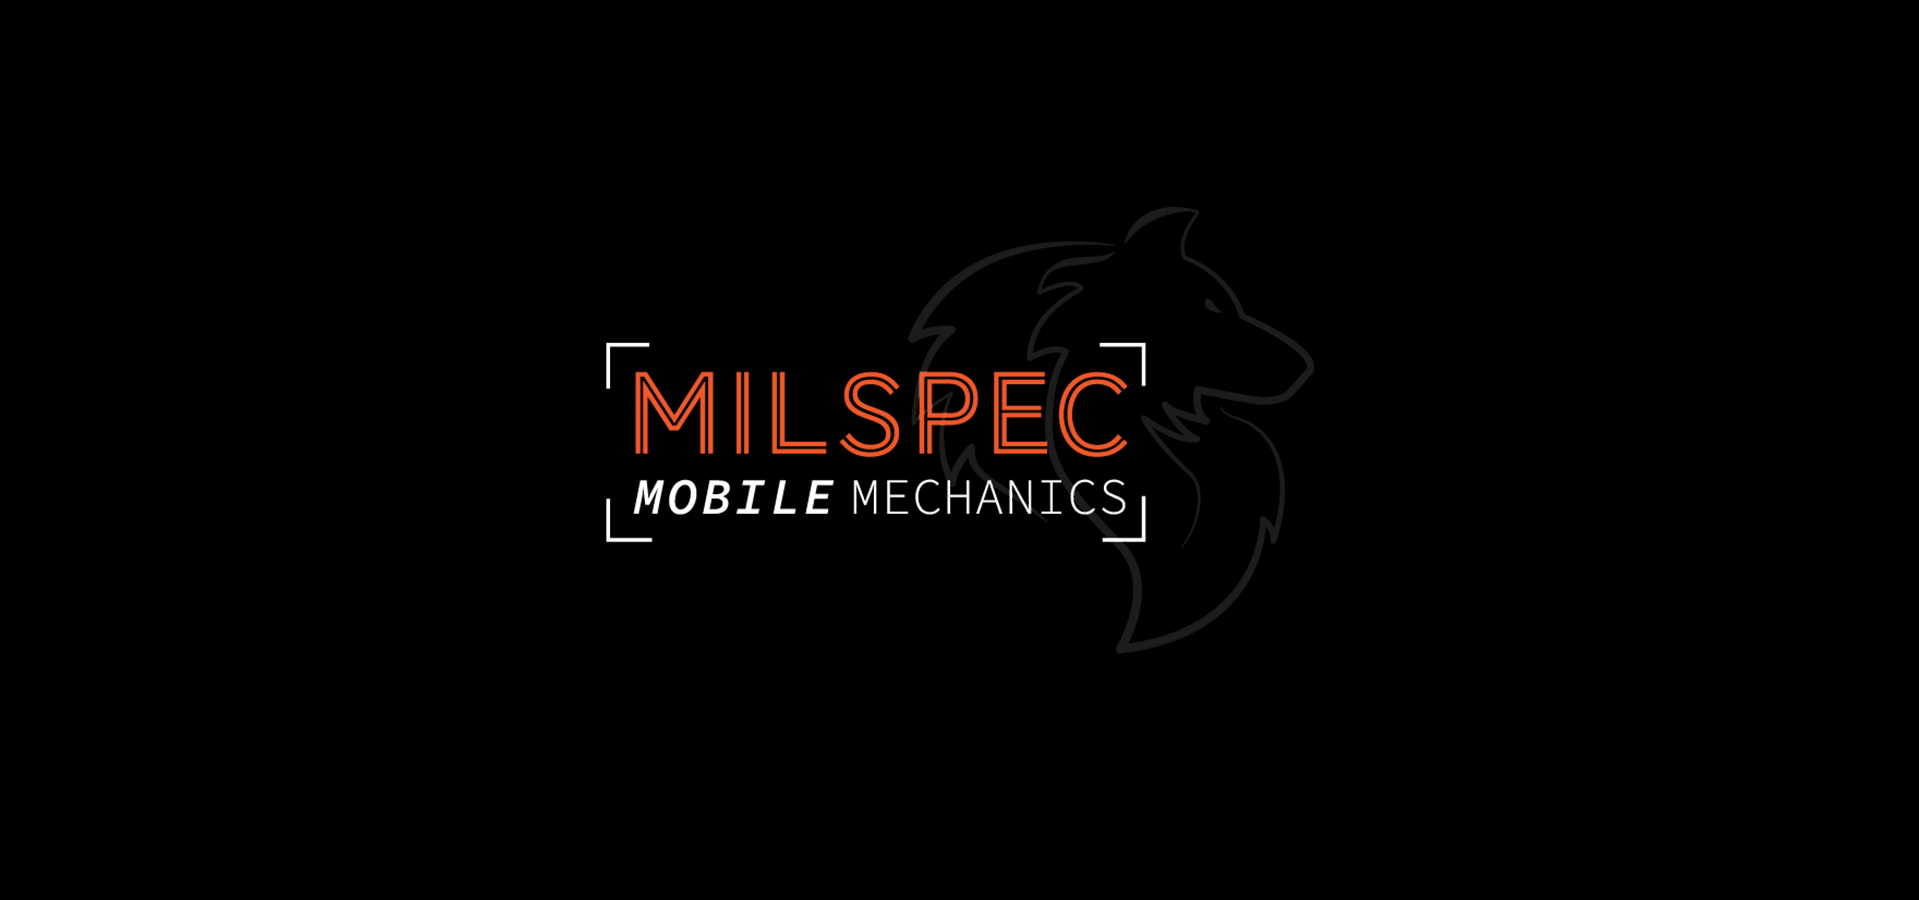 Milspec Mobile Mechanics Website on screen